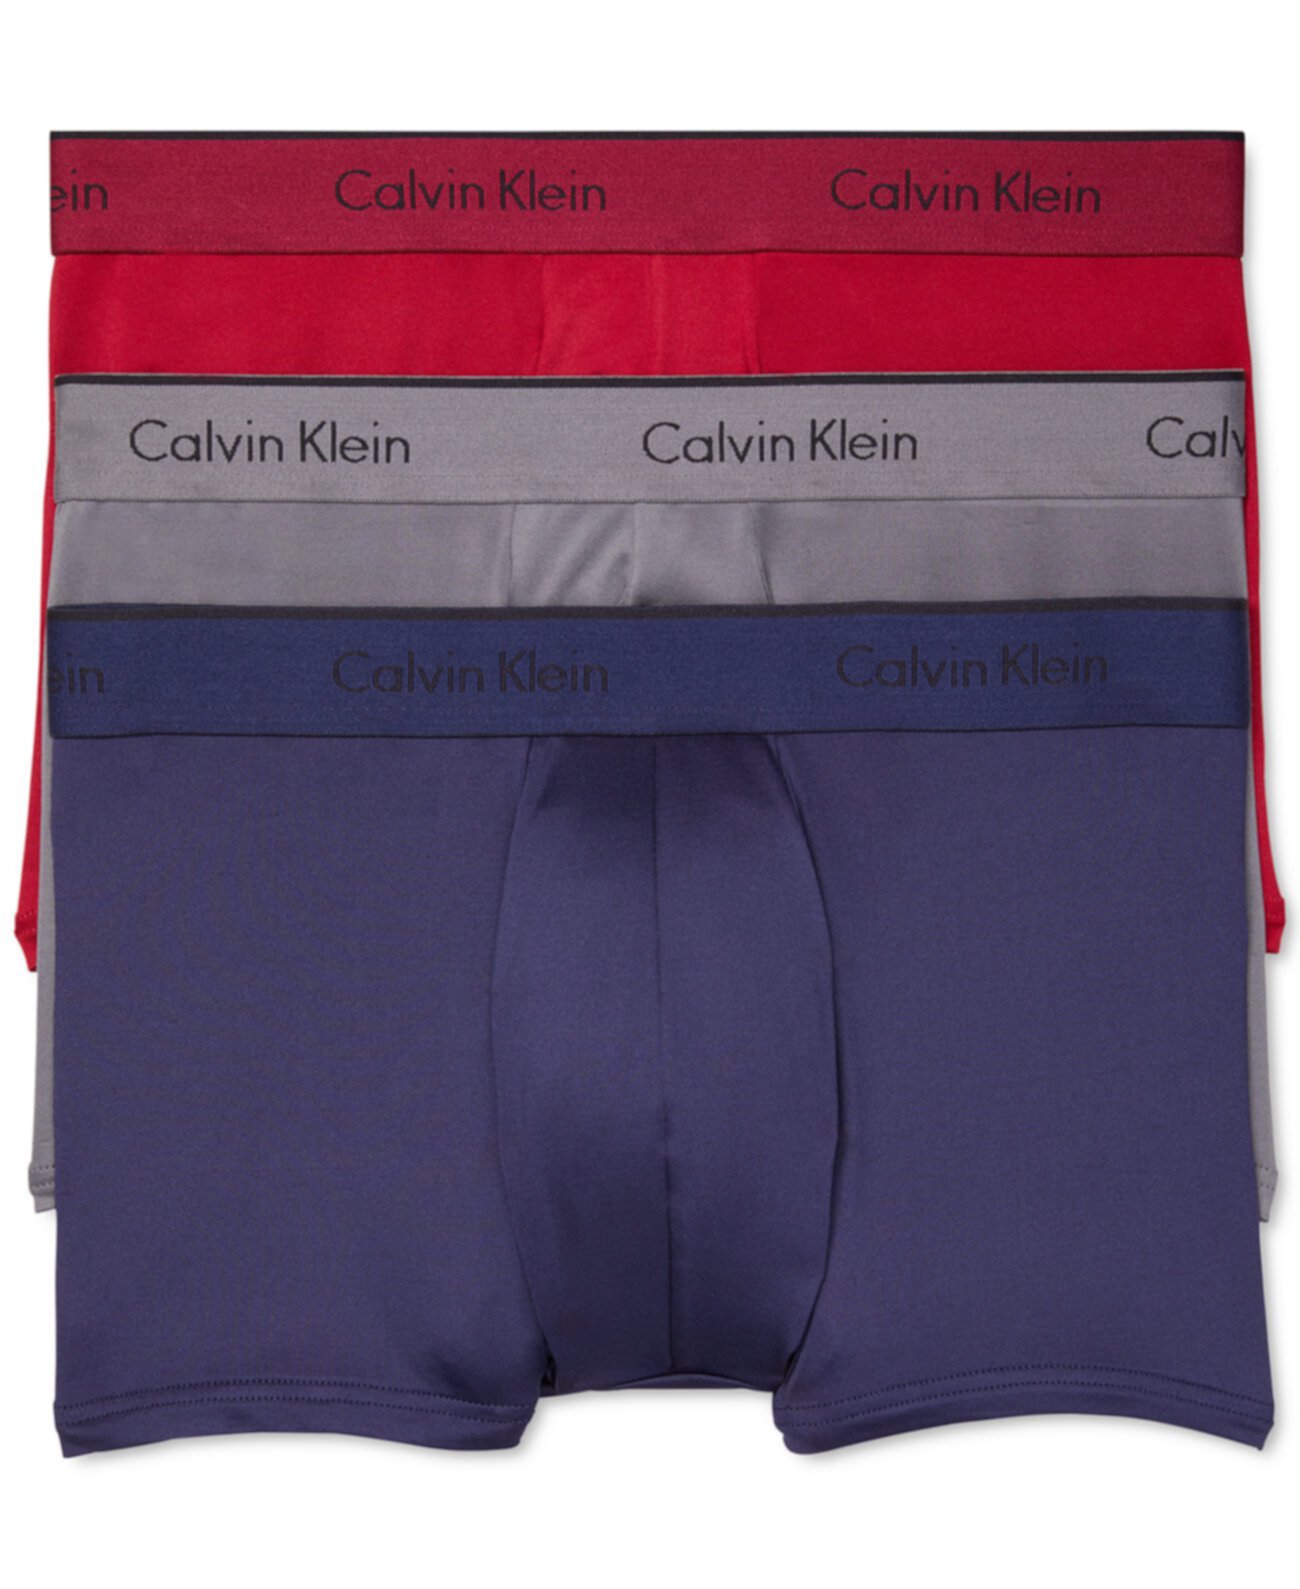 Мужской эластичный ствол из микрофибры, 3 упаковки Calvin Klein